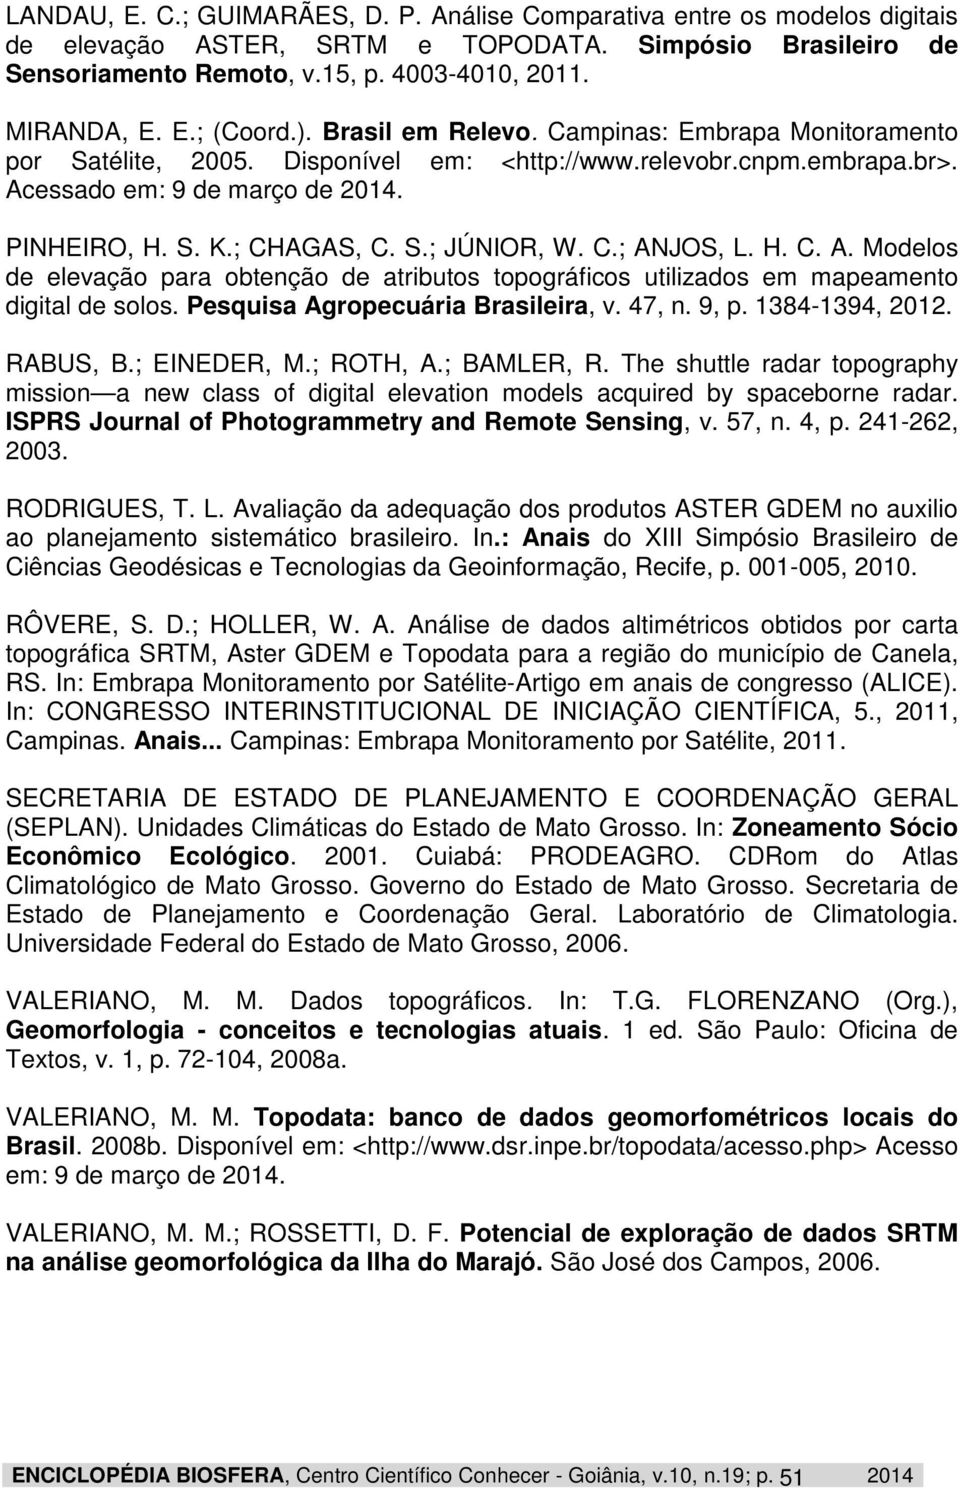 C.; ANJOS, L. H. C. A. Modelos de elevação para obtenção de atributos topográficos utilizados em mapeamento digital de solos. Pesquisa Agropecuária Brasileira, v. 47, n. 9, p. 1384-1394, 2012.